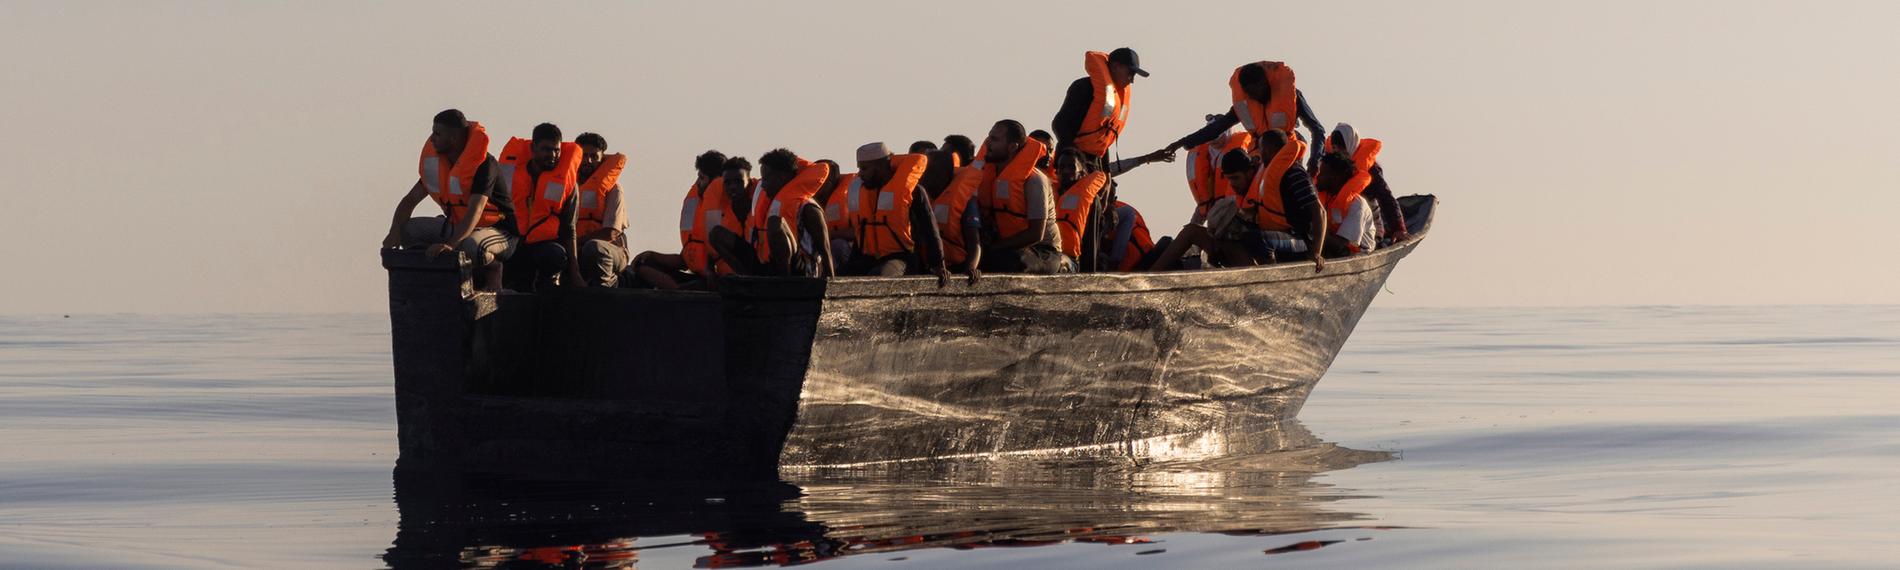 Ein Holzboot voller Menschen auf dem Mittelmeer